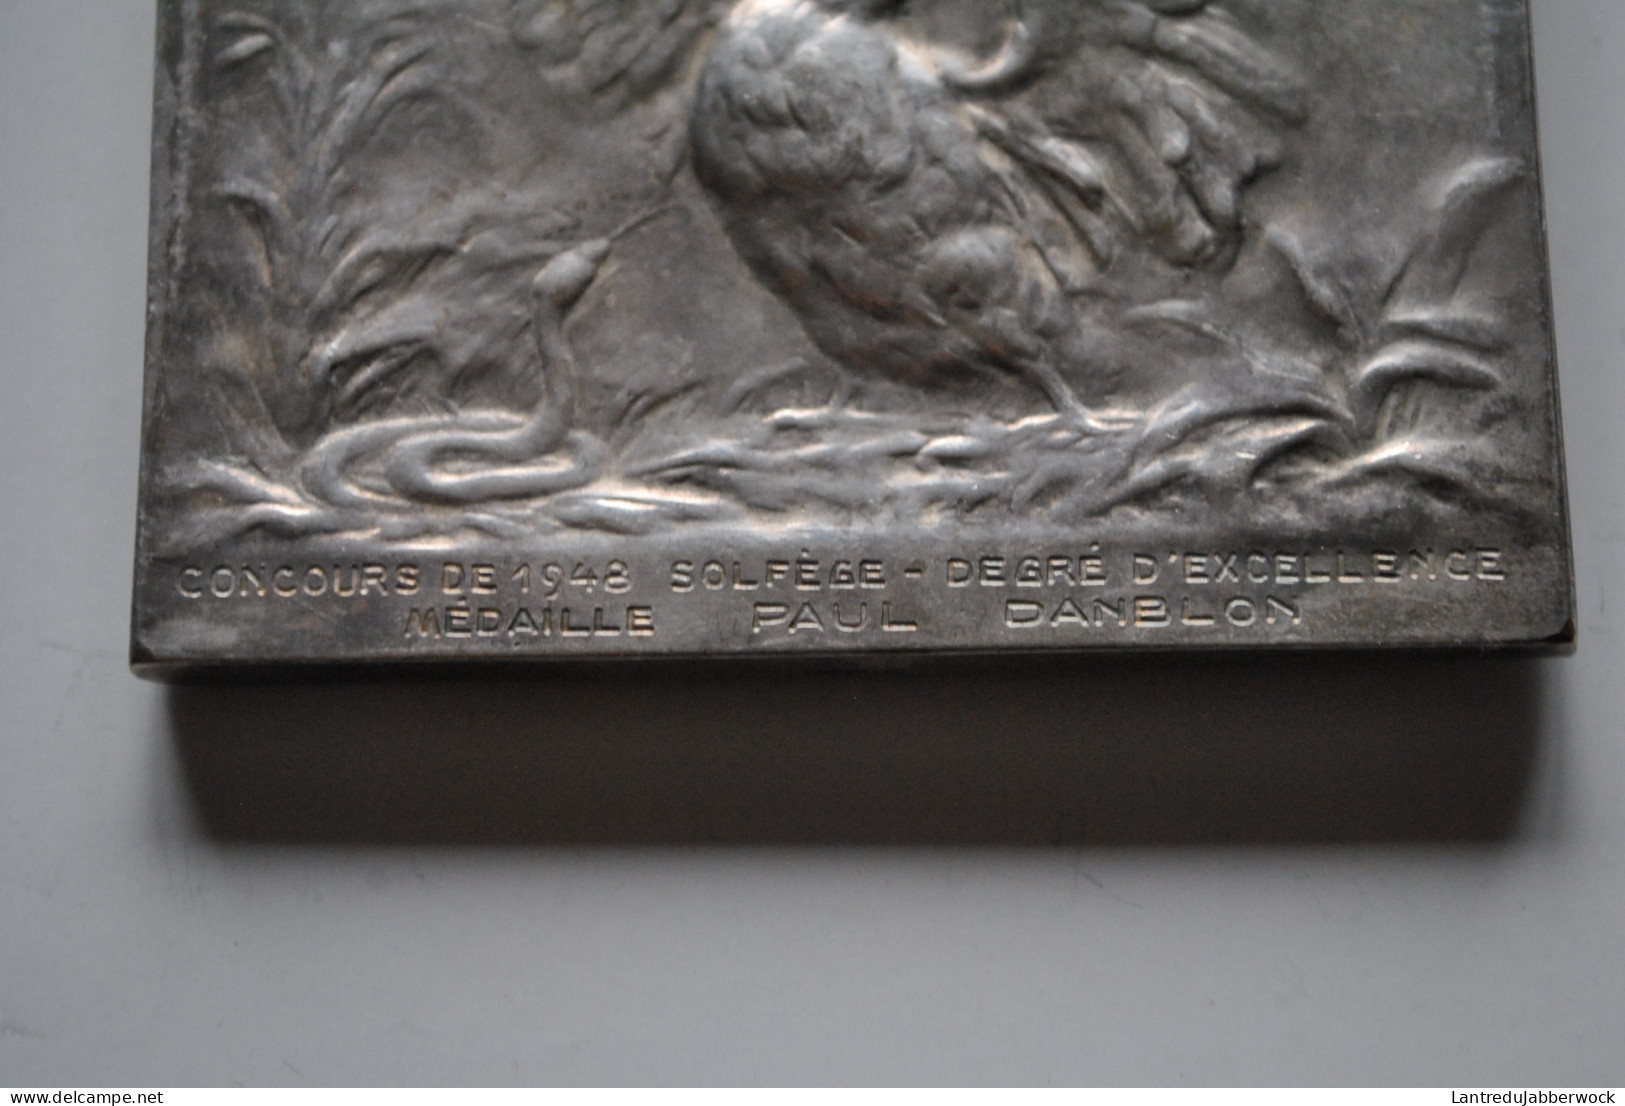 Médaille En Bronze Argenté Ecole De Musique De Saint Josse Ten Noode Schaerbeek Concours 1948 De Solfège Paul Danblon - Jetons De Communes